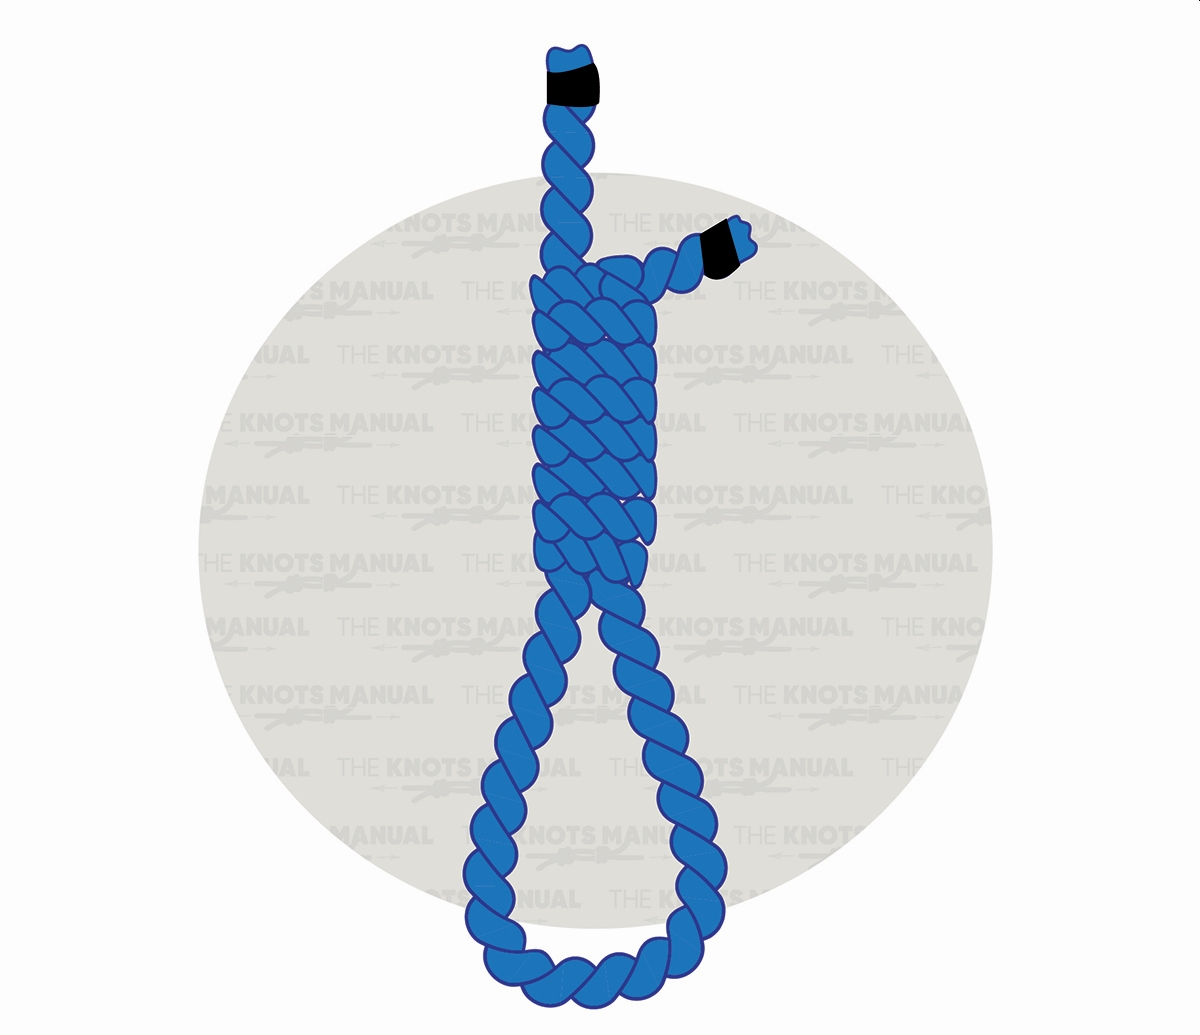 Hangman’s Knot (Noose) Tutorial